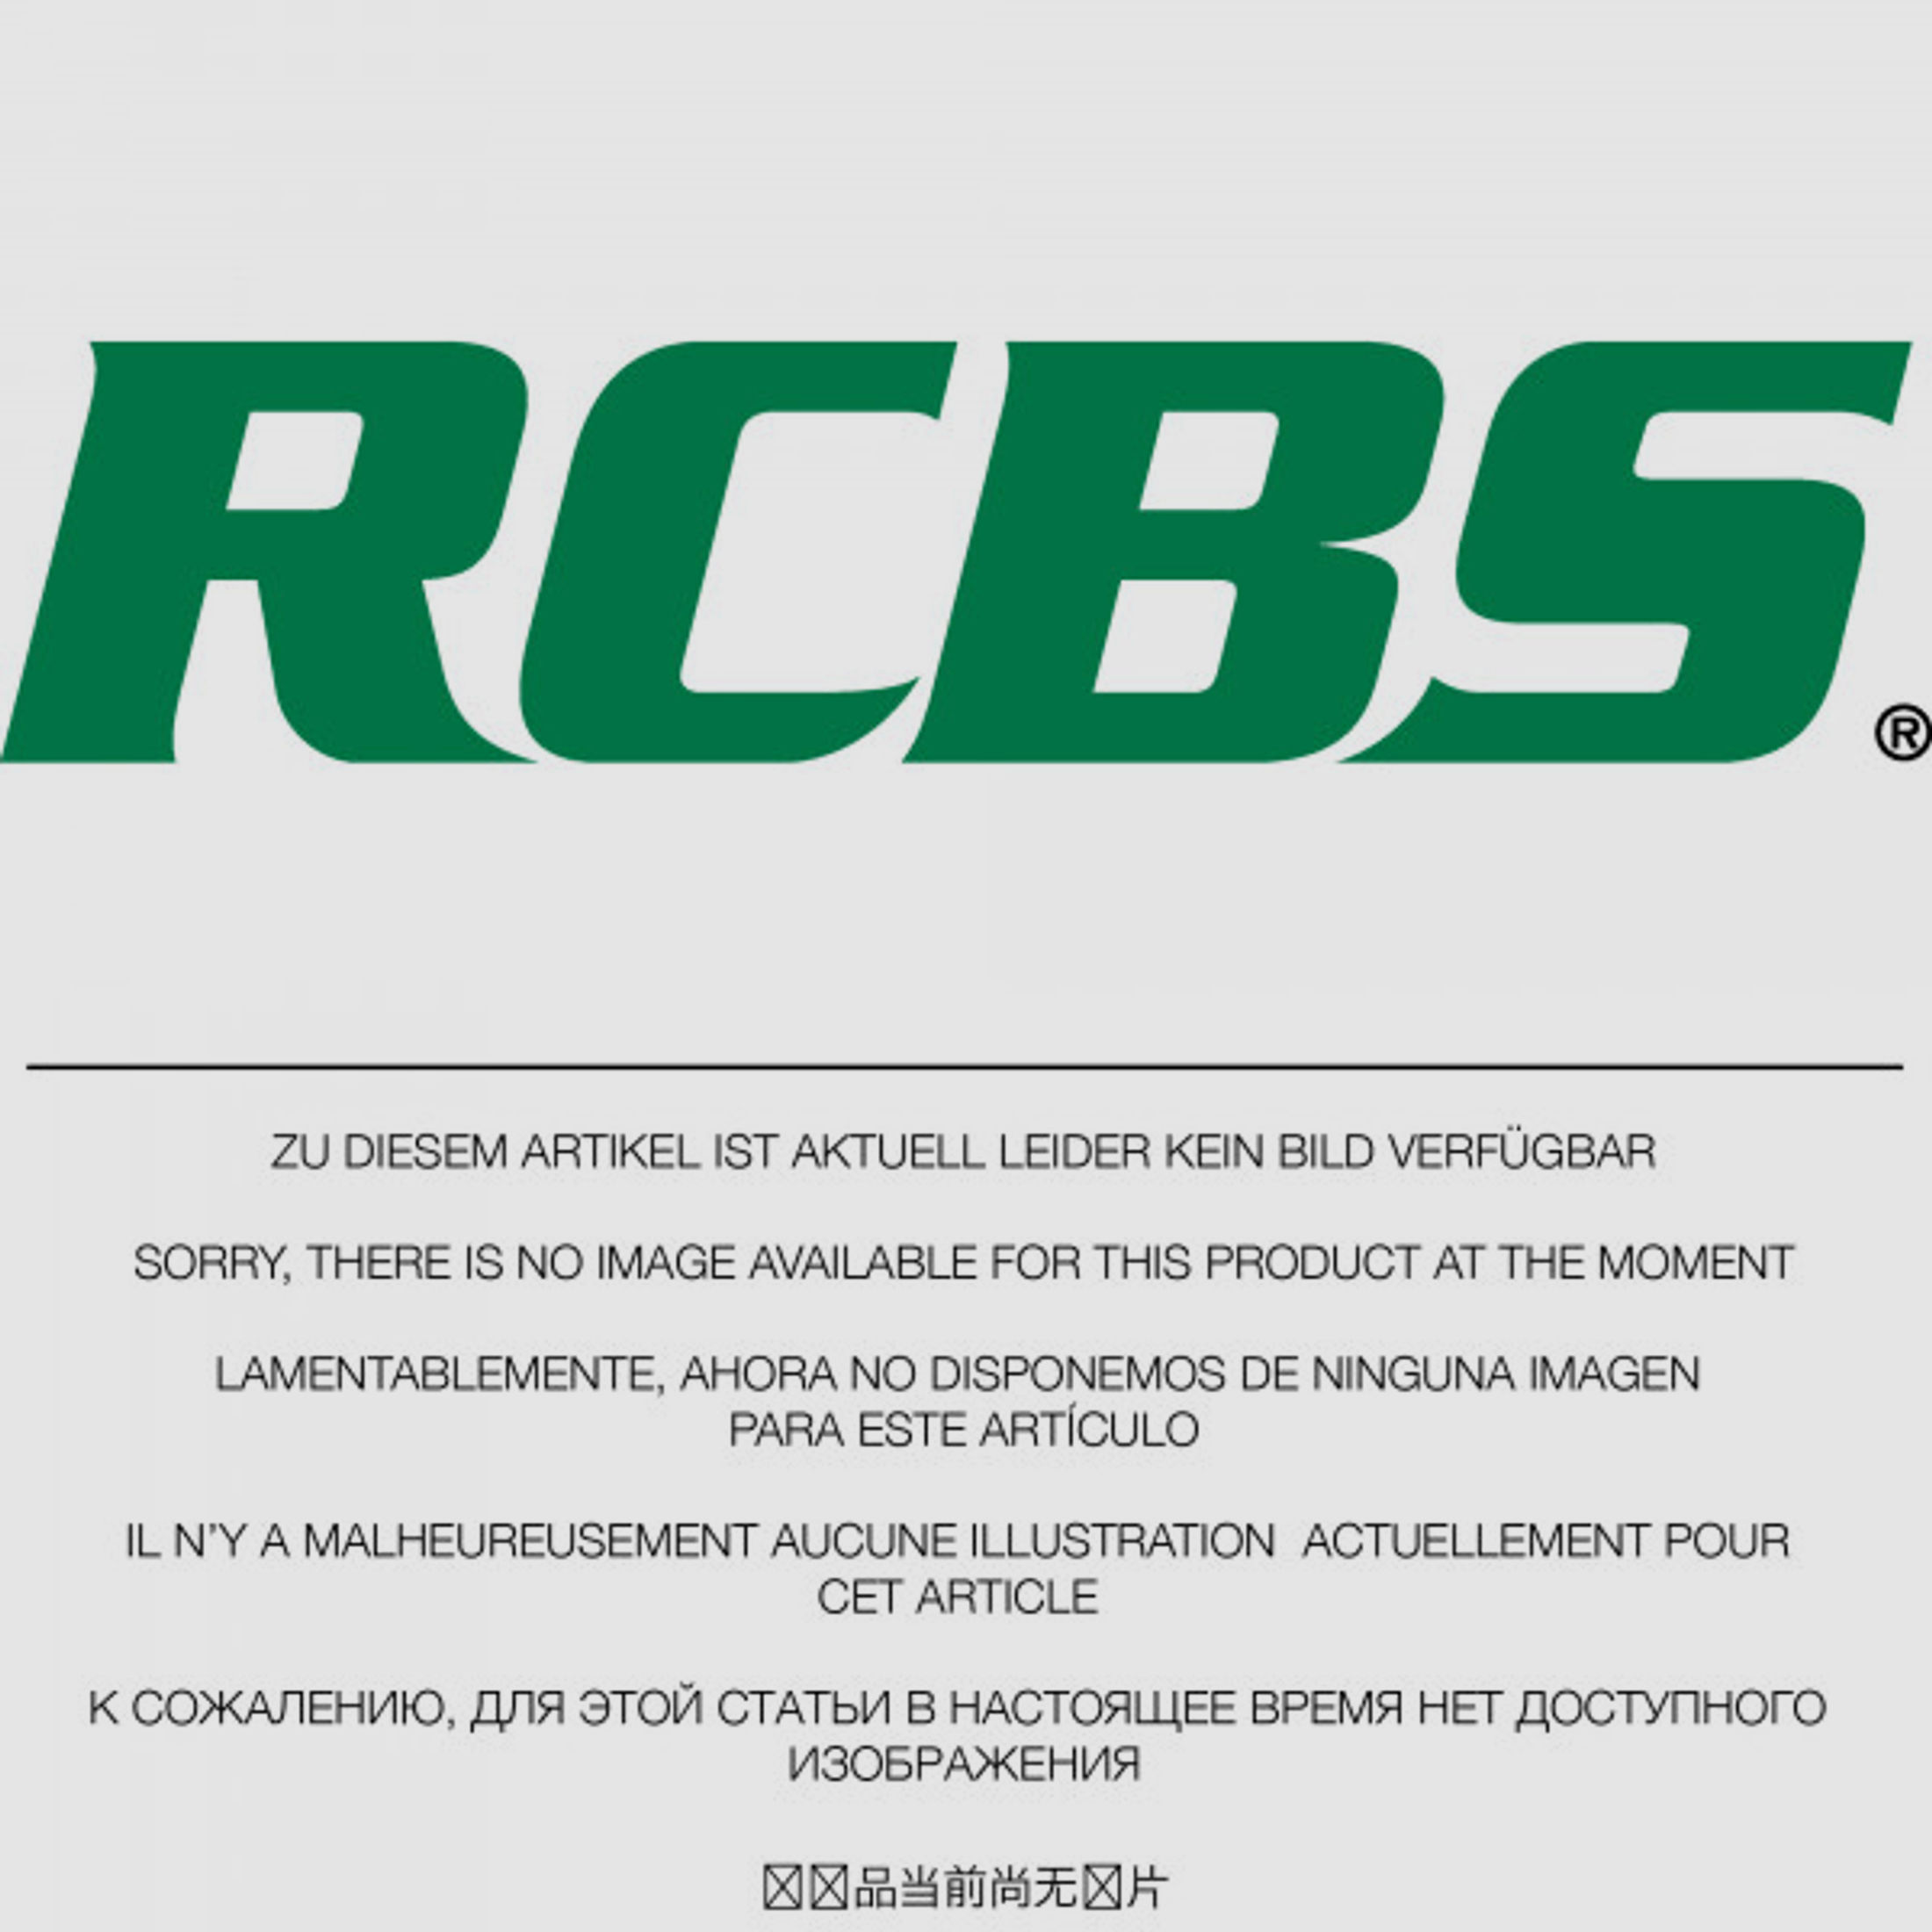 RCBS Lube-A-Matic Top Punch Geschoss Setzstempel Nr. 311 #82513